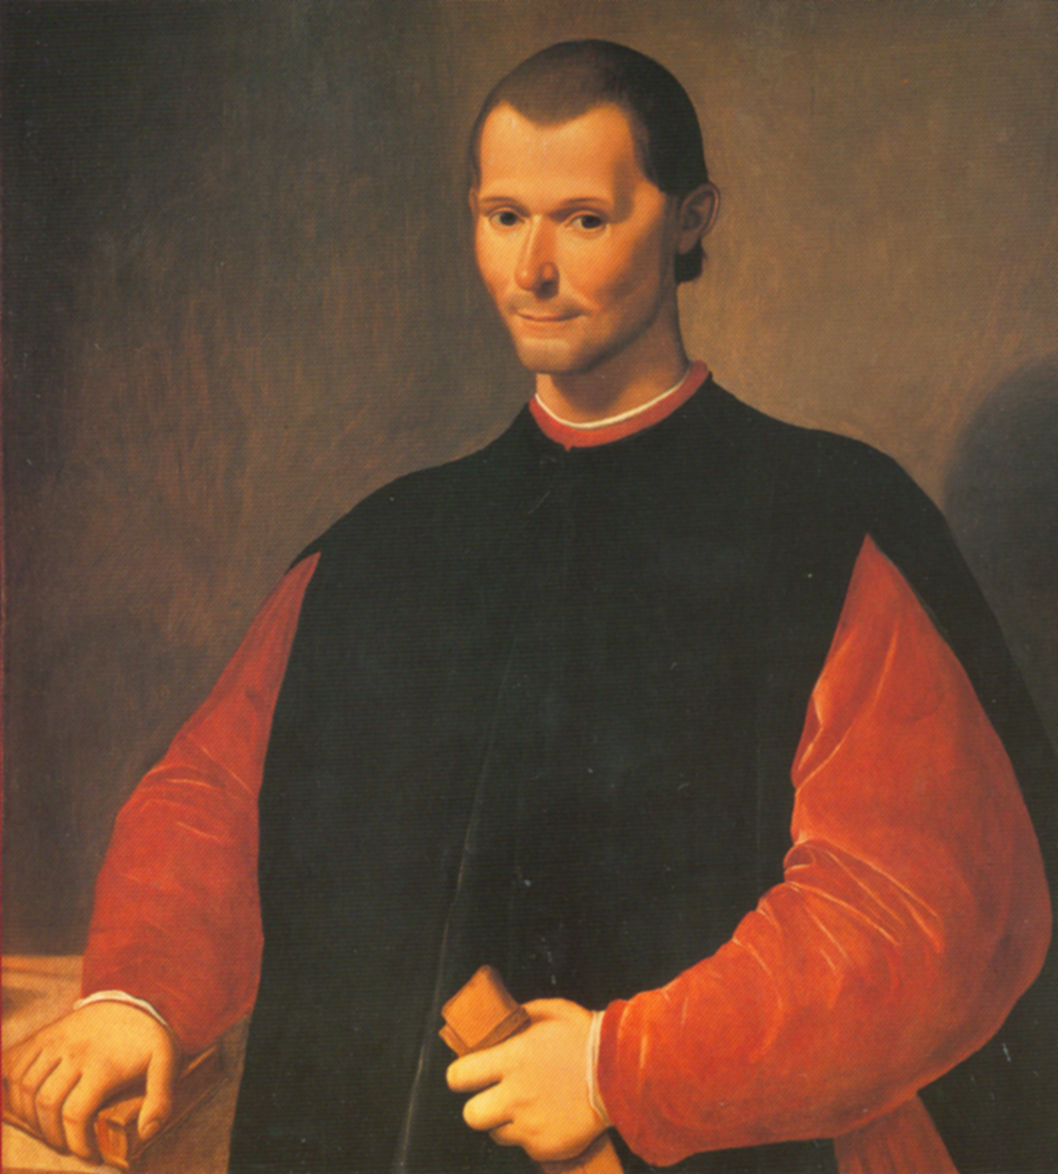 http://upload.wikimedia.org/wikipedia/commons/1/1e/Santi_di_Tito_-_Niccolo_Machiavelli%27s_portrait.jpg